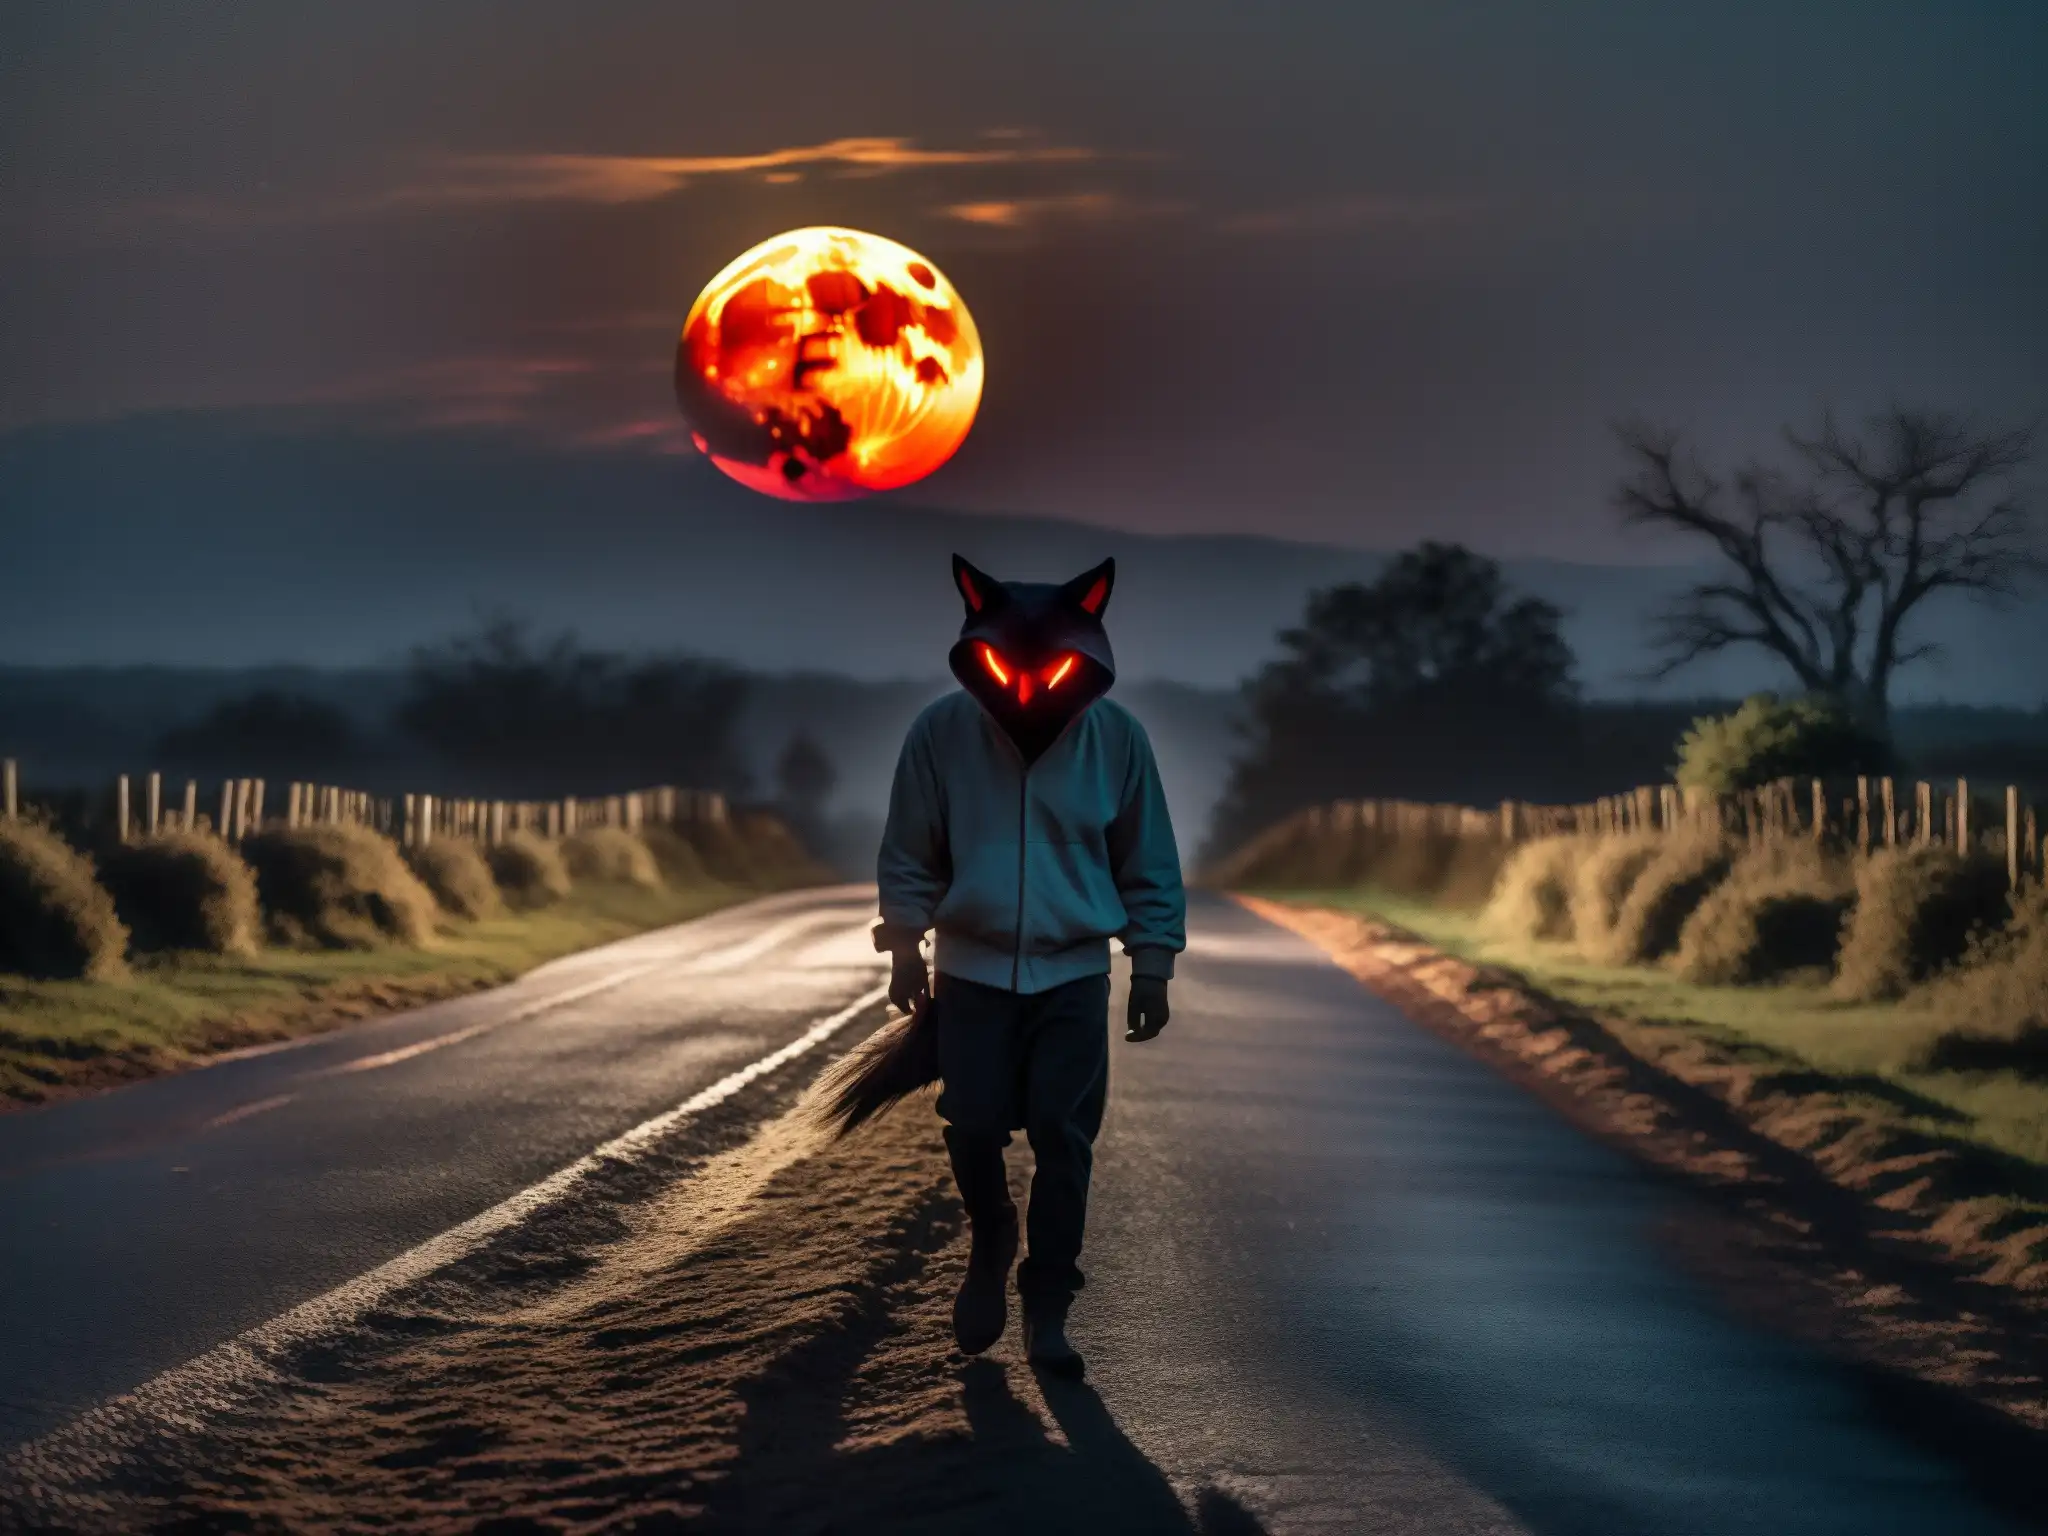 Un ser misterioso con ojos rojos brillantes acecha en un oscuro camino rural bajo la luna llena, evocando el origen psicológico del Chupacabras